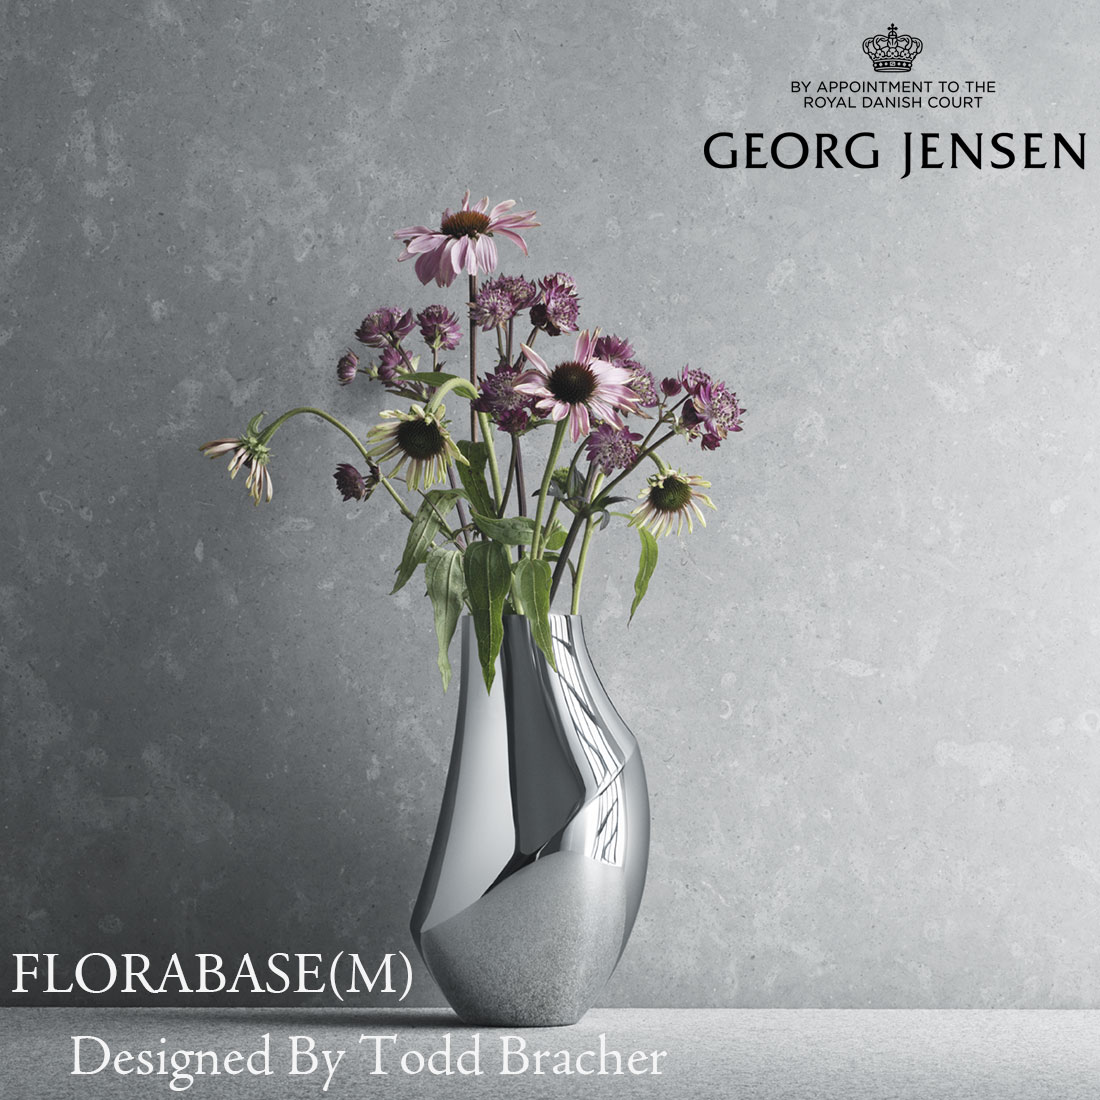 HOLMEGAARD（ホルムガード）DESIGN WITH LIGHT「ポット クリア」H12cm フラワーボウル 花瓶 フラワーベース 花器 北欧 ノルディック インテリア ギフト プレゼント